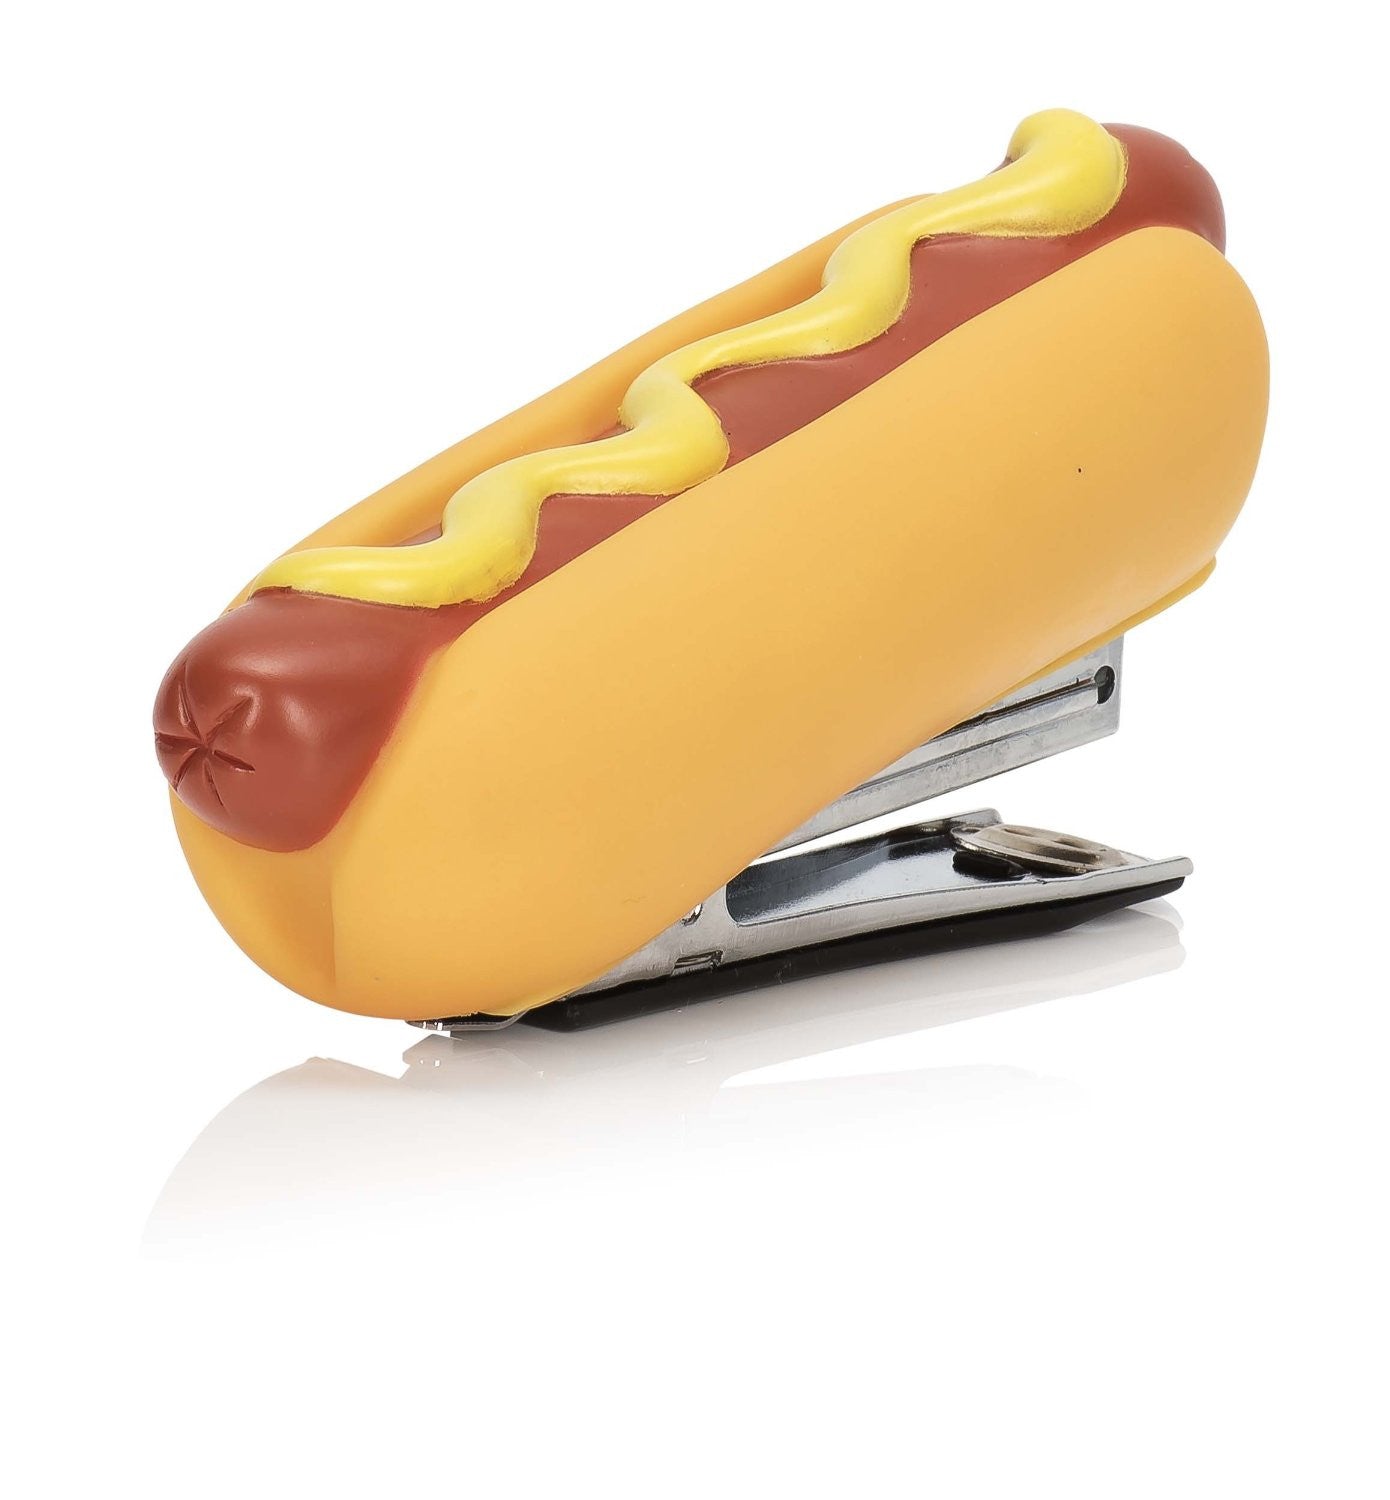 Hot Dog Stapler - OddGifts.com